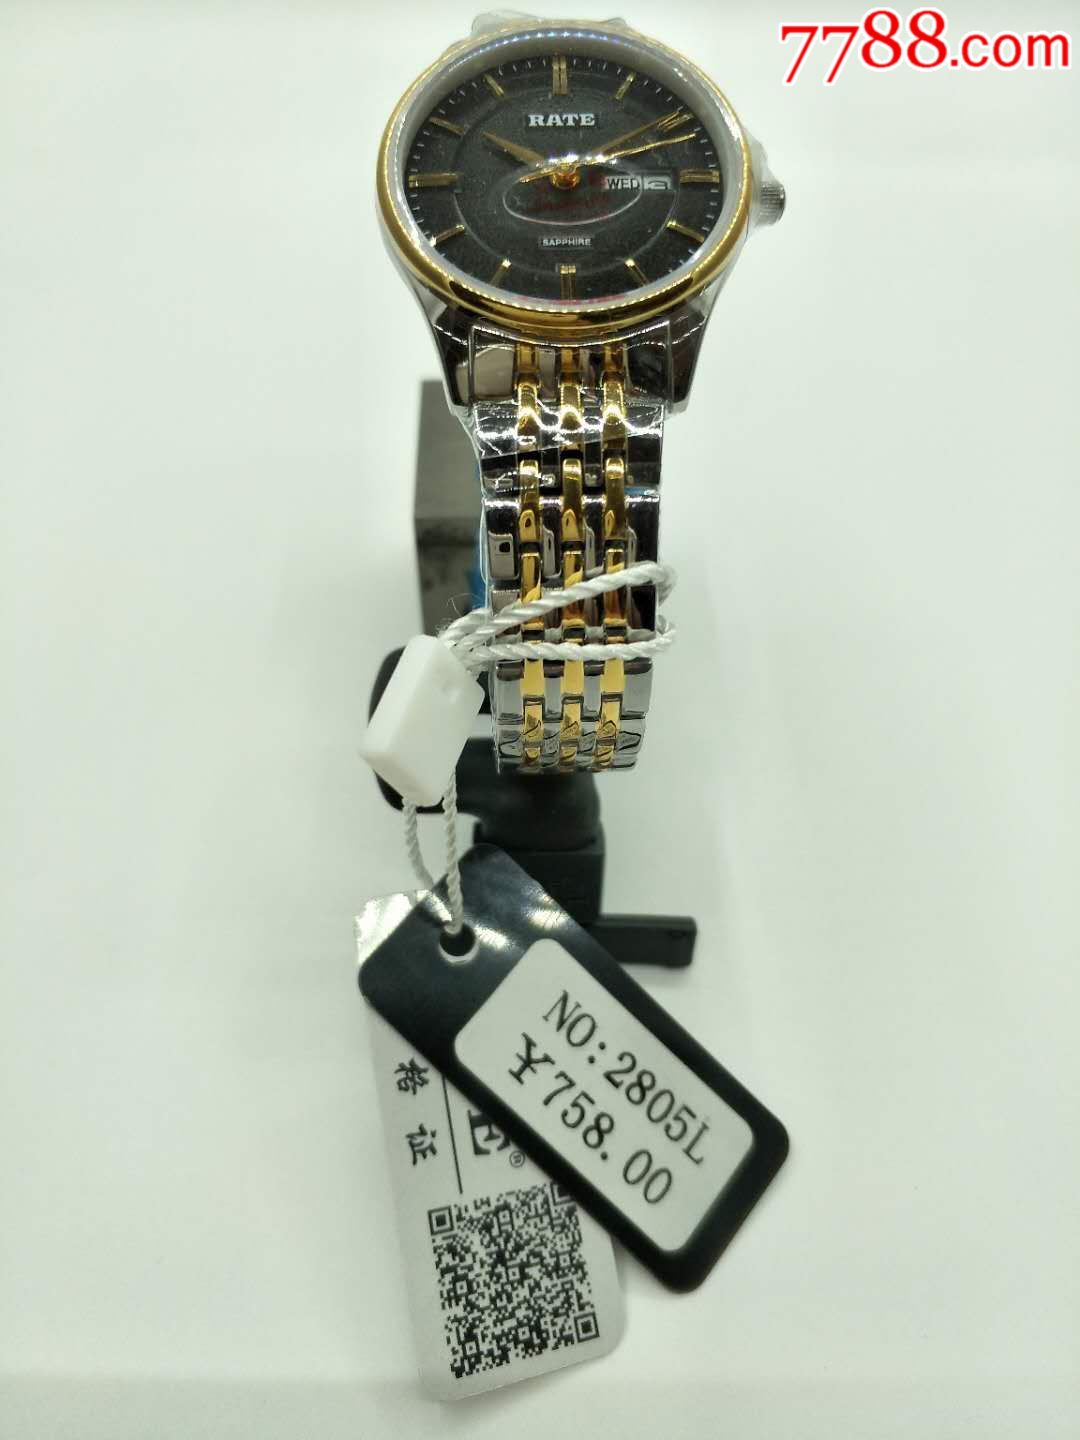 雷特-价格:558.0000元-se57601550-手表/腕表-零售